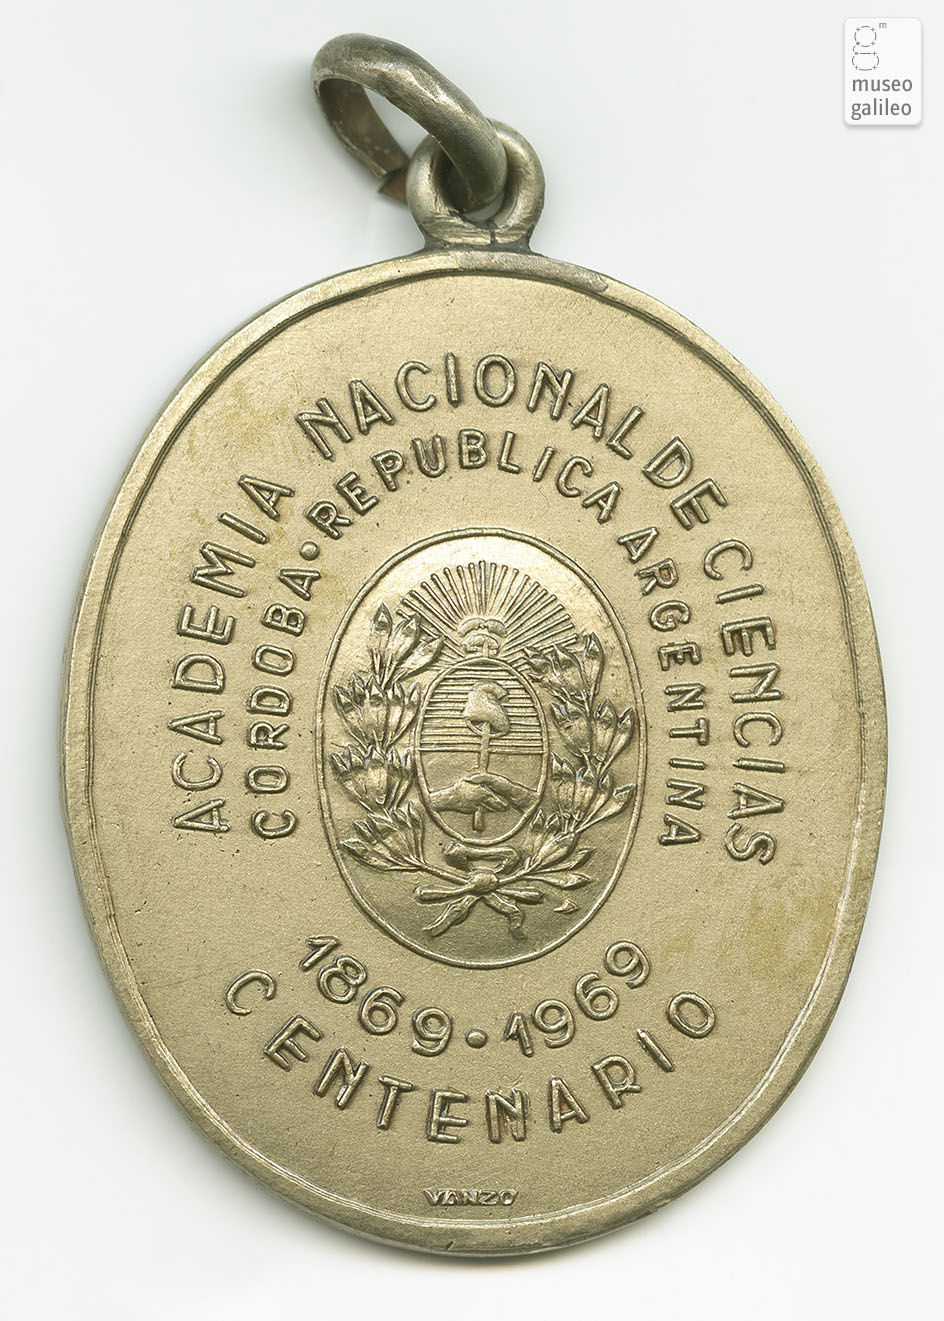 Centenario Accademia Nazionale di Scienze (Argentina, 1969) - obverse